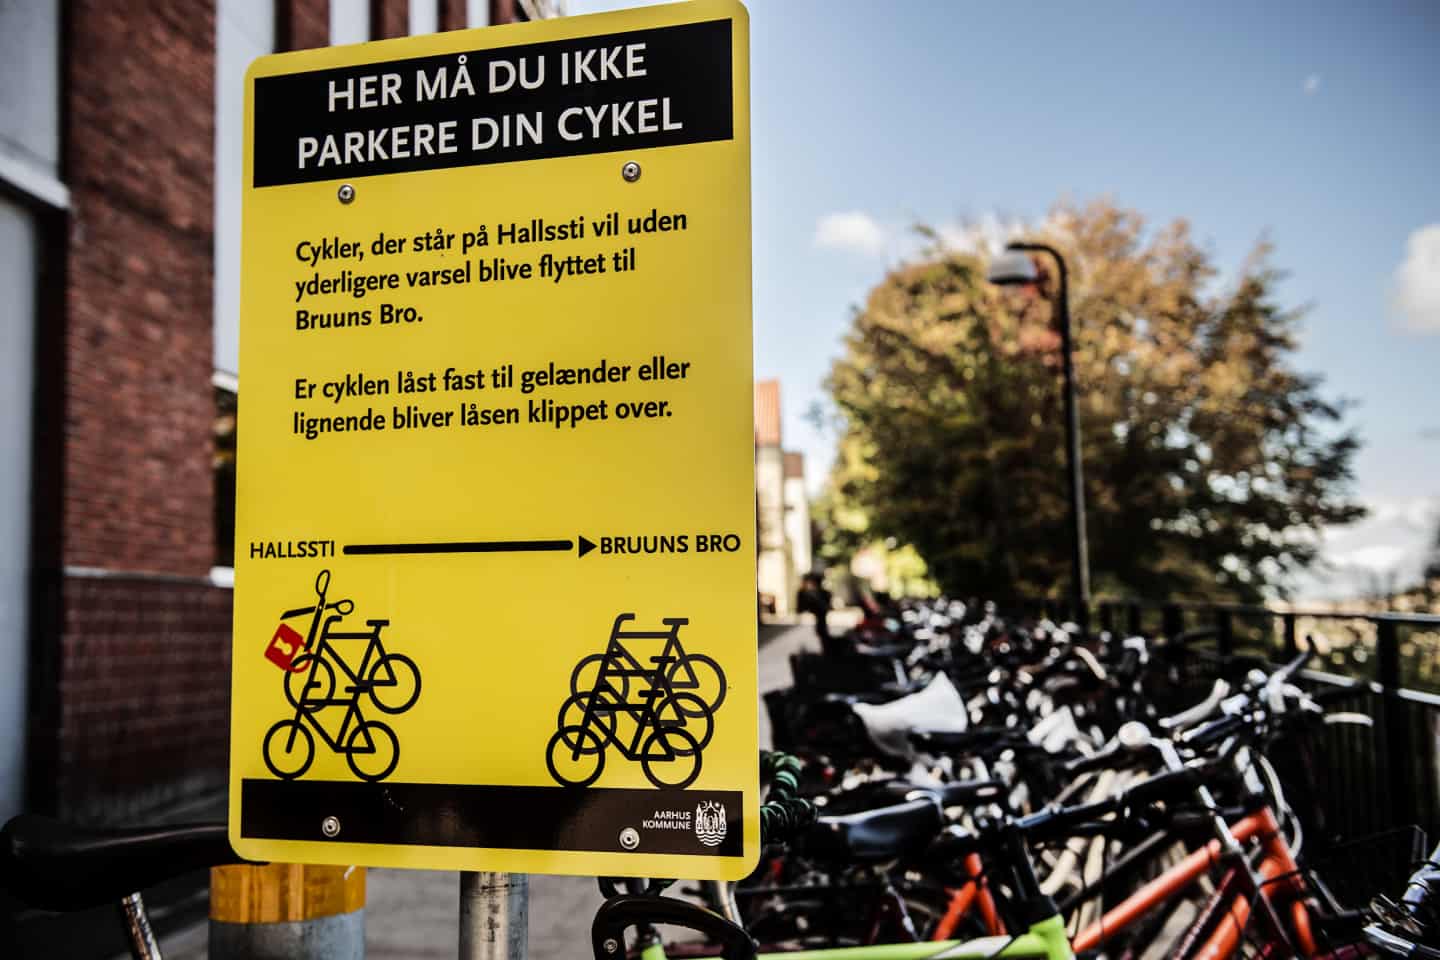 Indvending Det sfære Kommunen skruer bissen på: Nu fjernes ulovligt parkerede cykler | stiften.dk